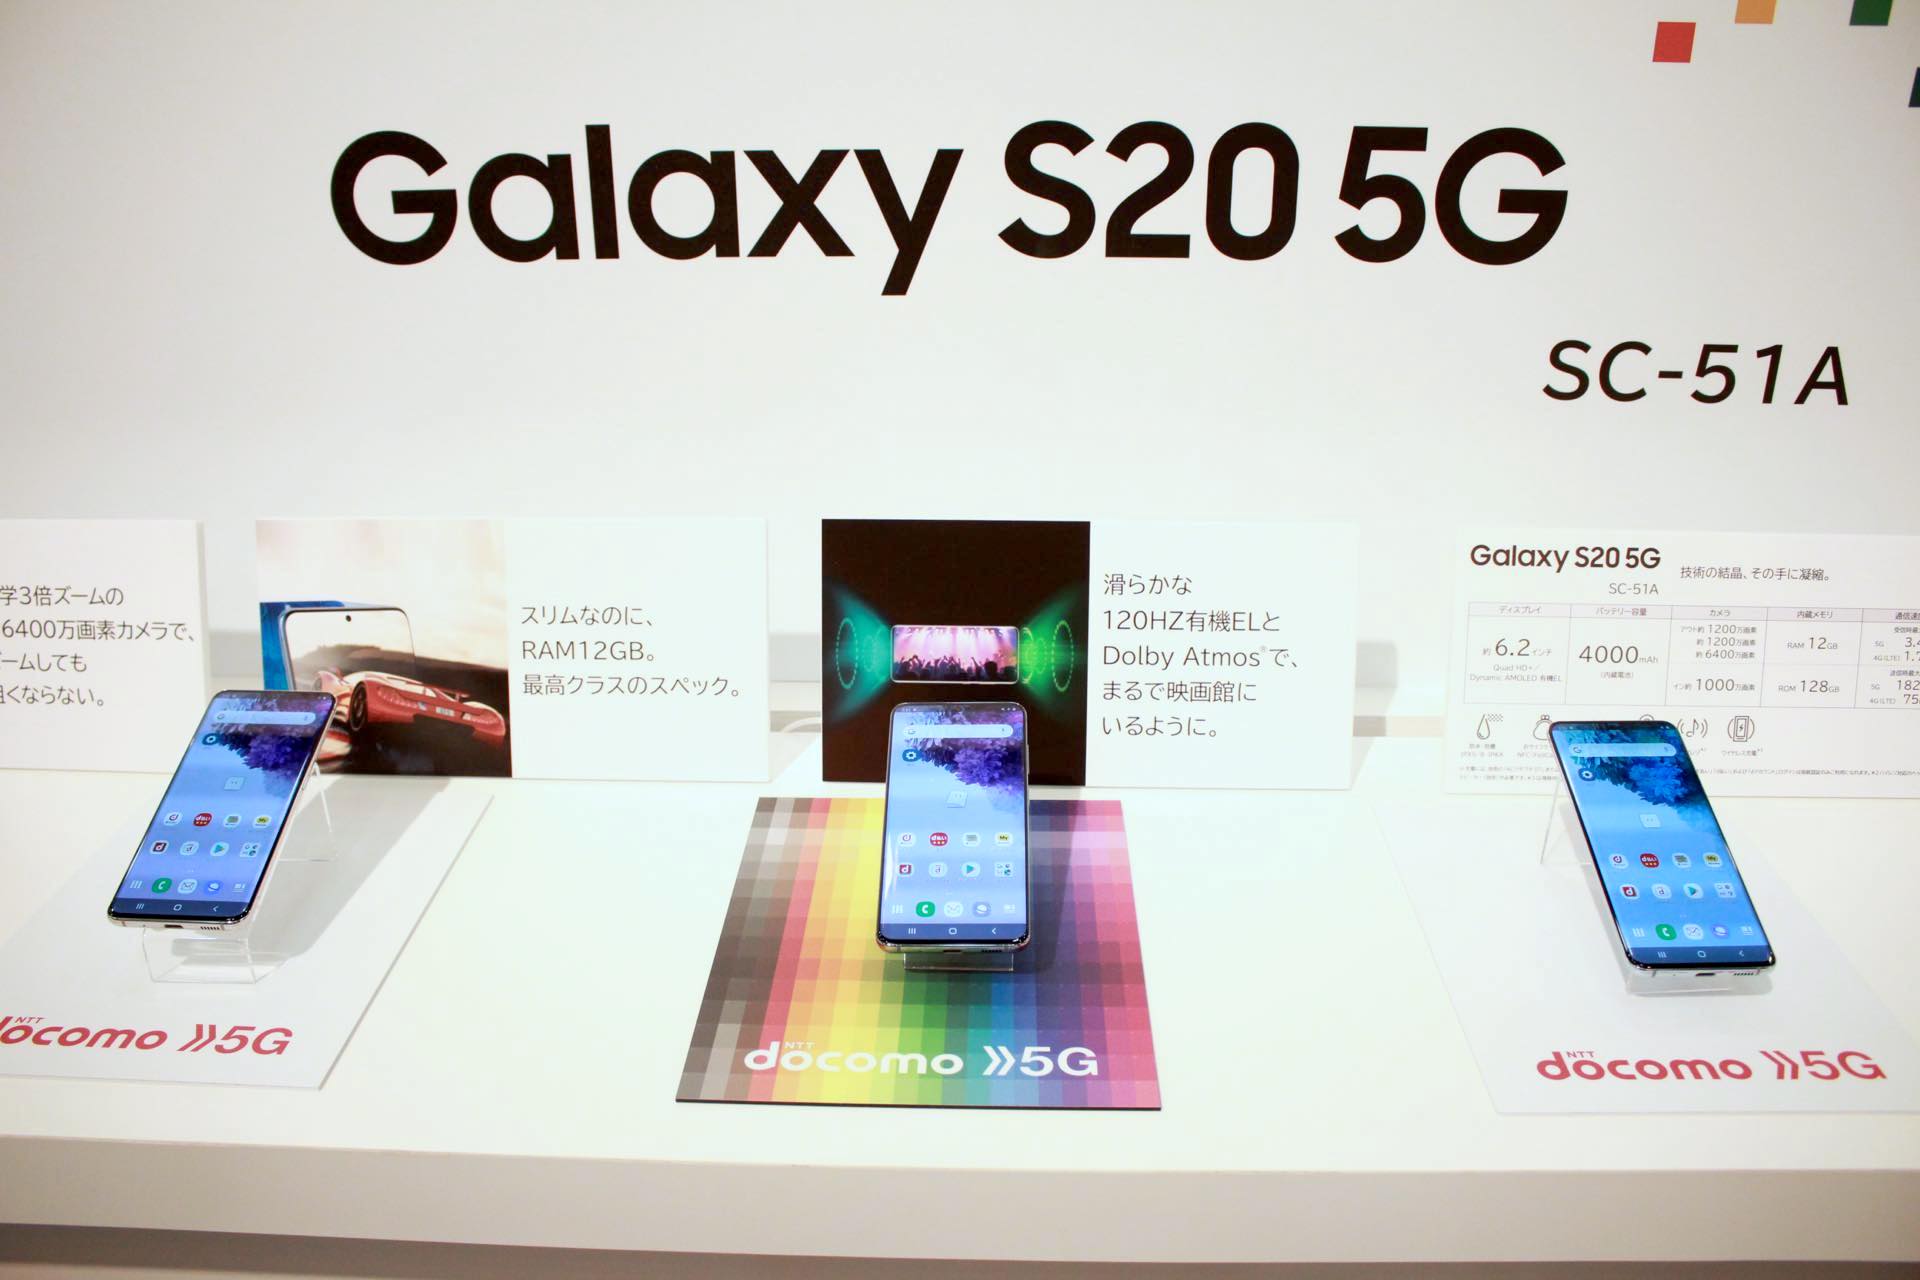 ドコモオンラインショップで単体購入を含めて5gスマホ Galaxy S 5g Sc 51a が2万6400円割引 Arrows Nx9 F 52a が2万5300円割引に S Max